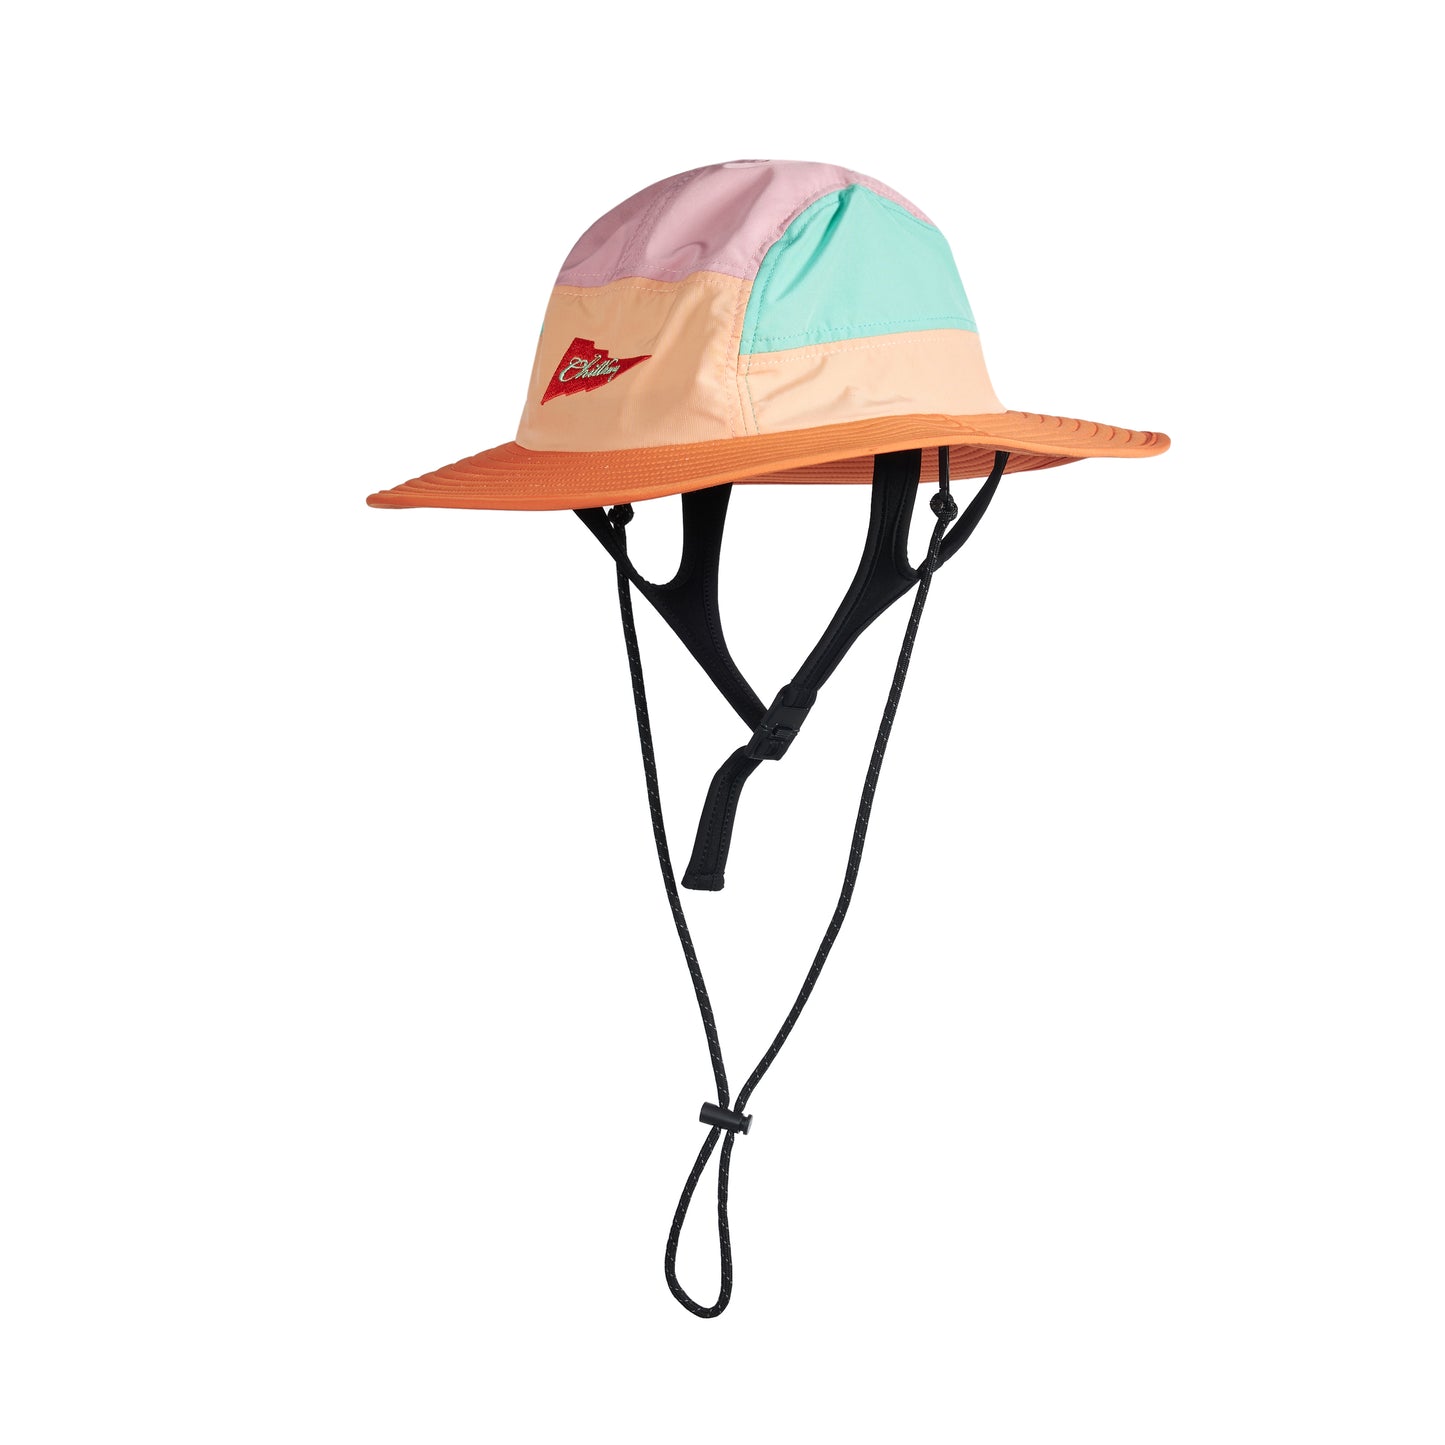 CHILLHANG 拼色衝浪漁夫帽(粉紅 x 橙)